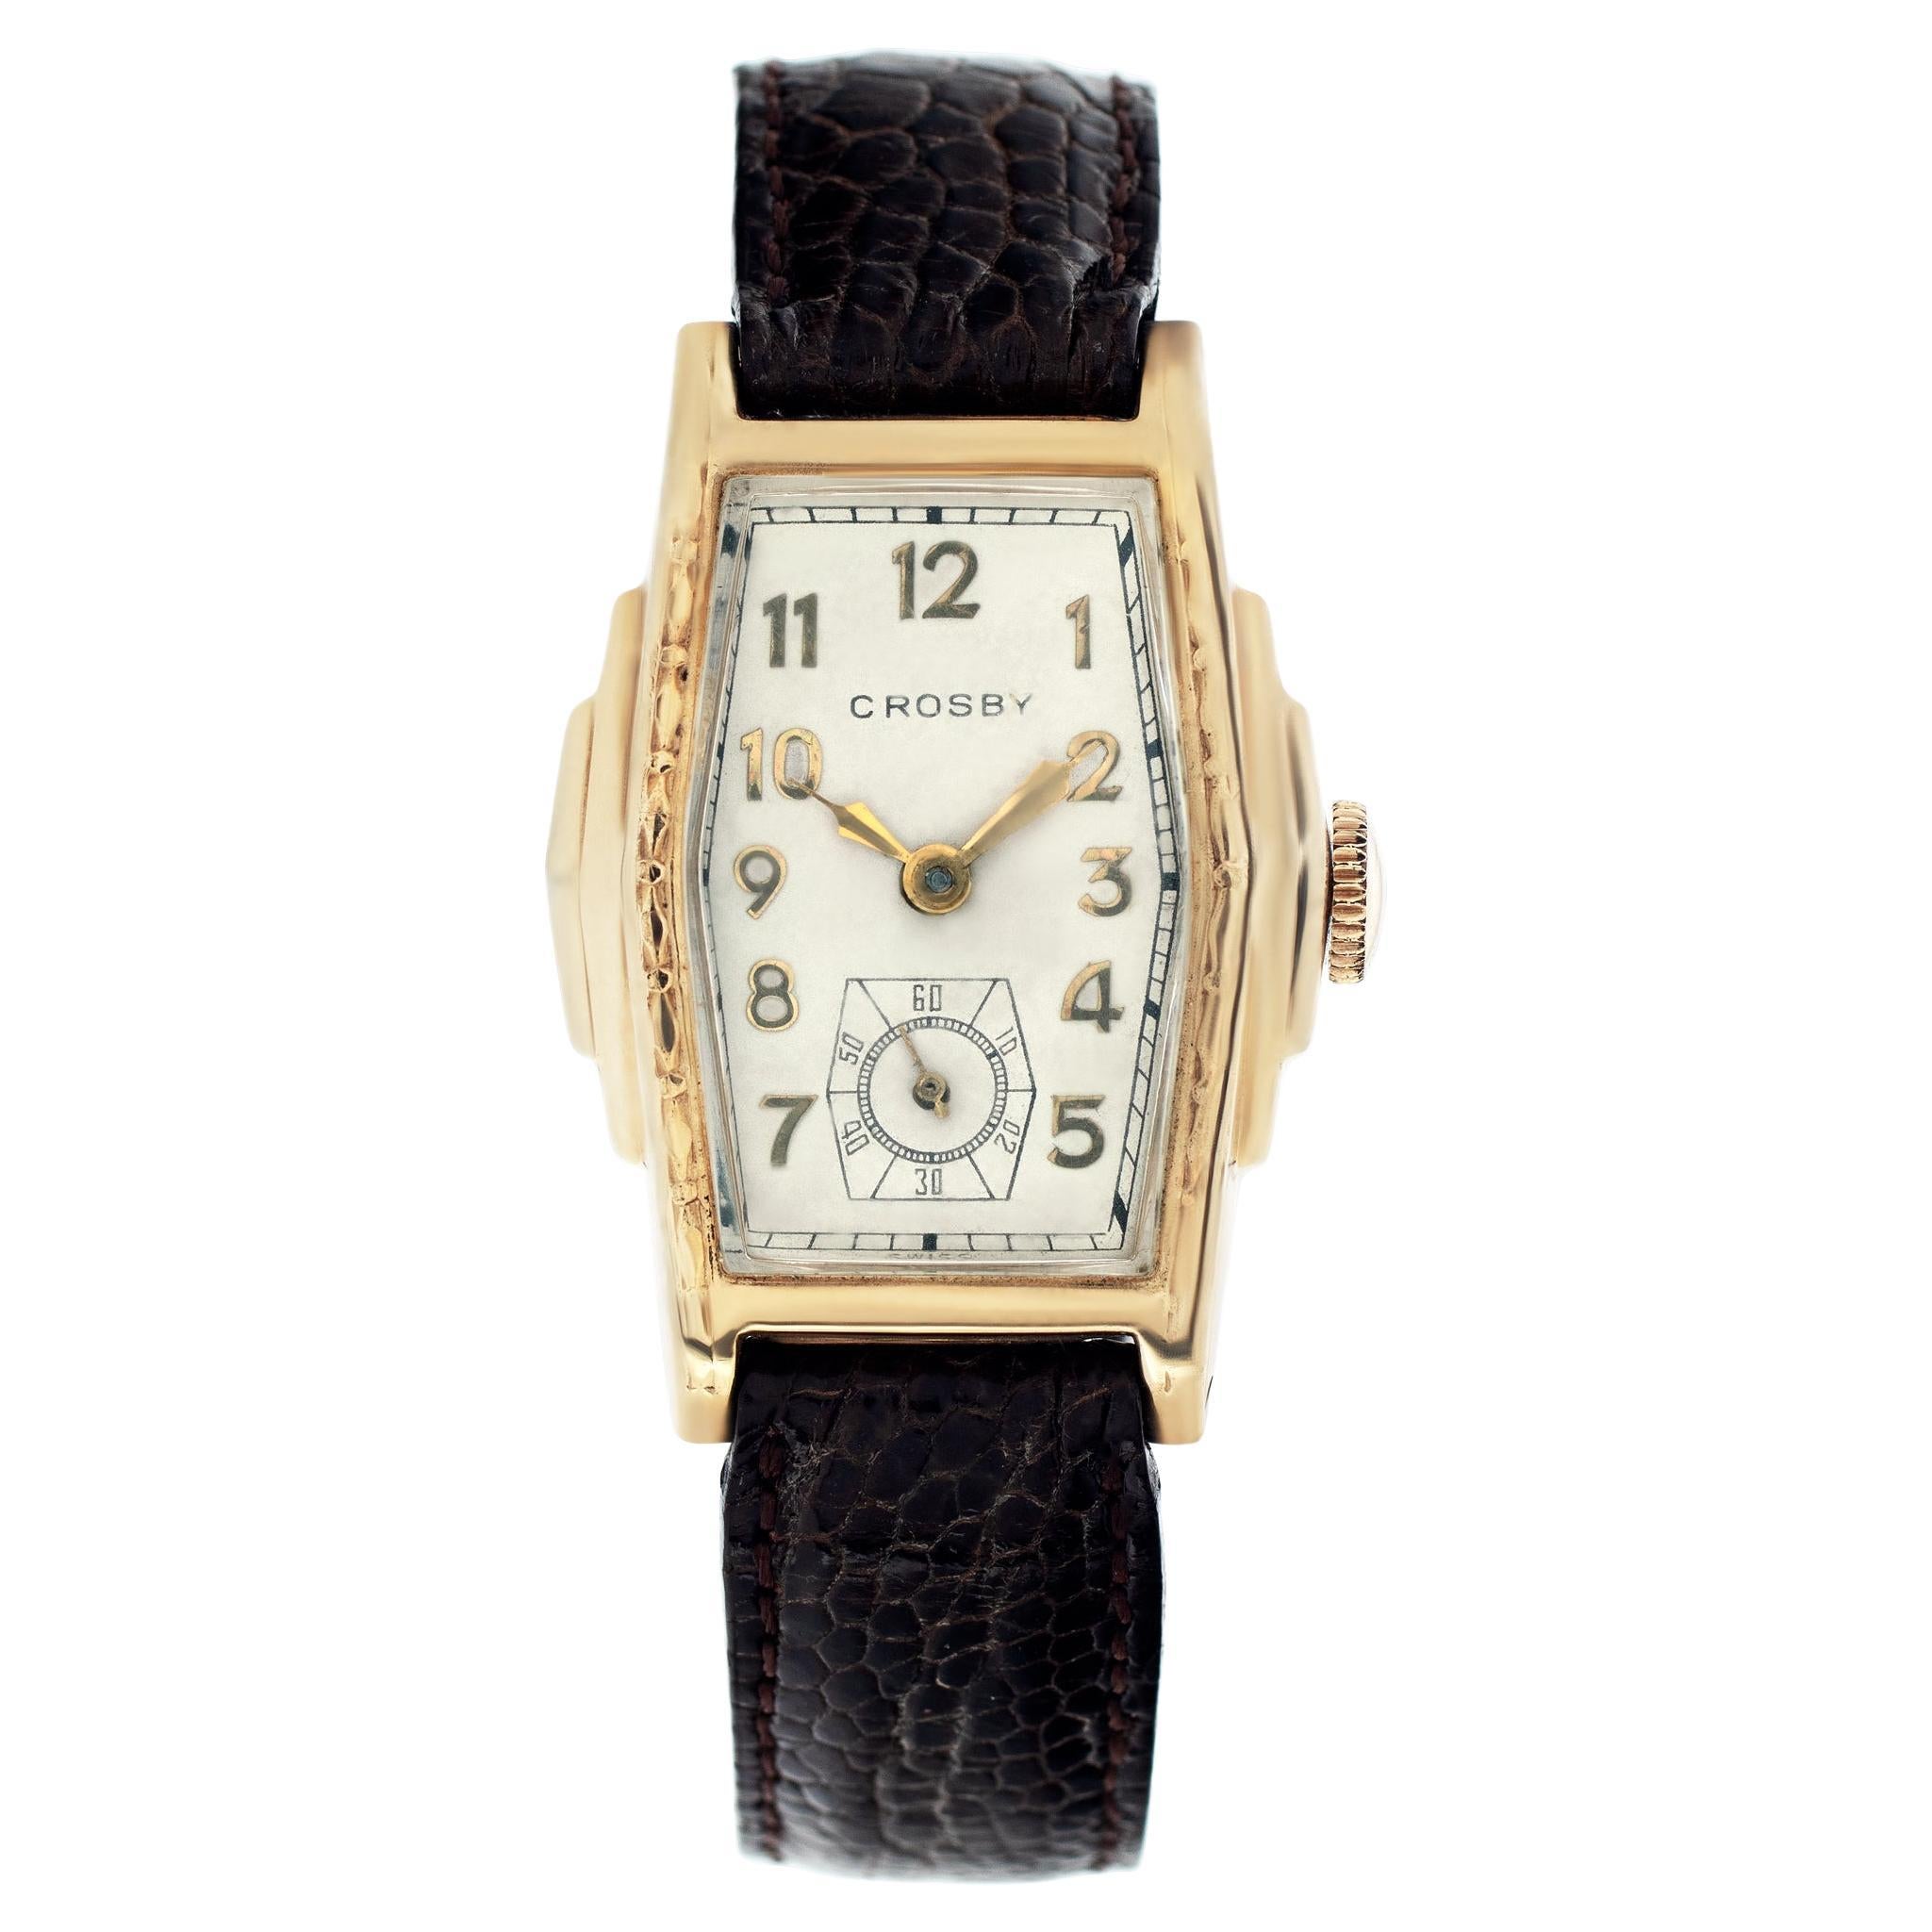 Crosby Manual Wristwatch Reference W4301